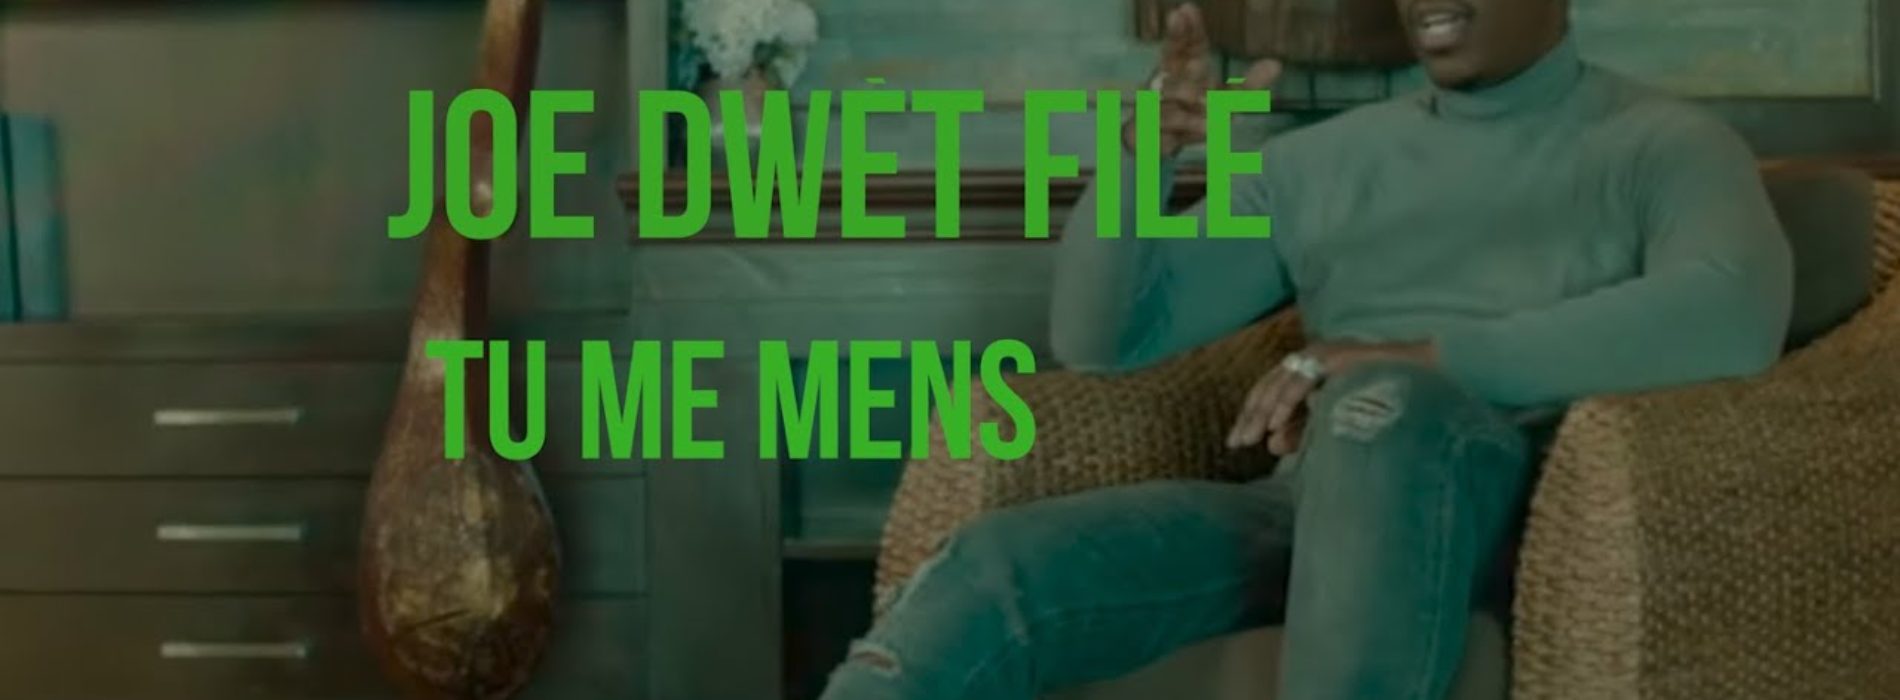 Joe Dwet File – Tu me mens (Clip officiel) – Juin 2020